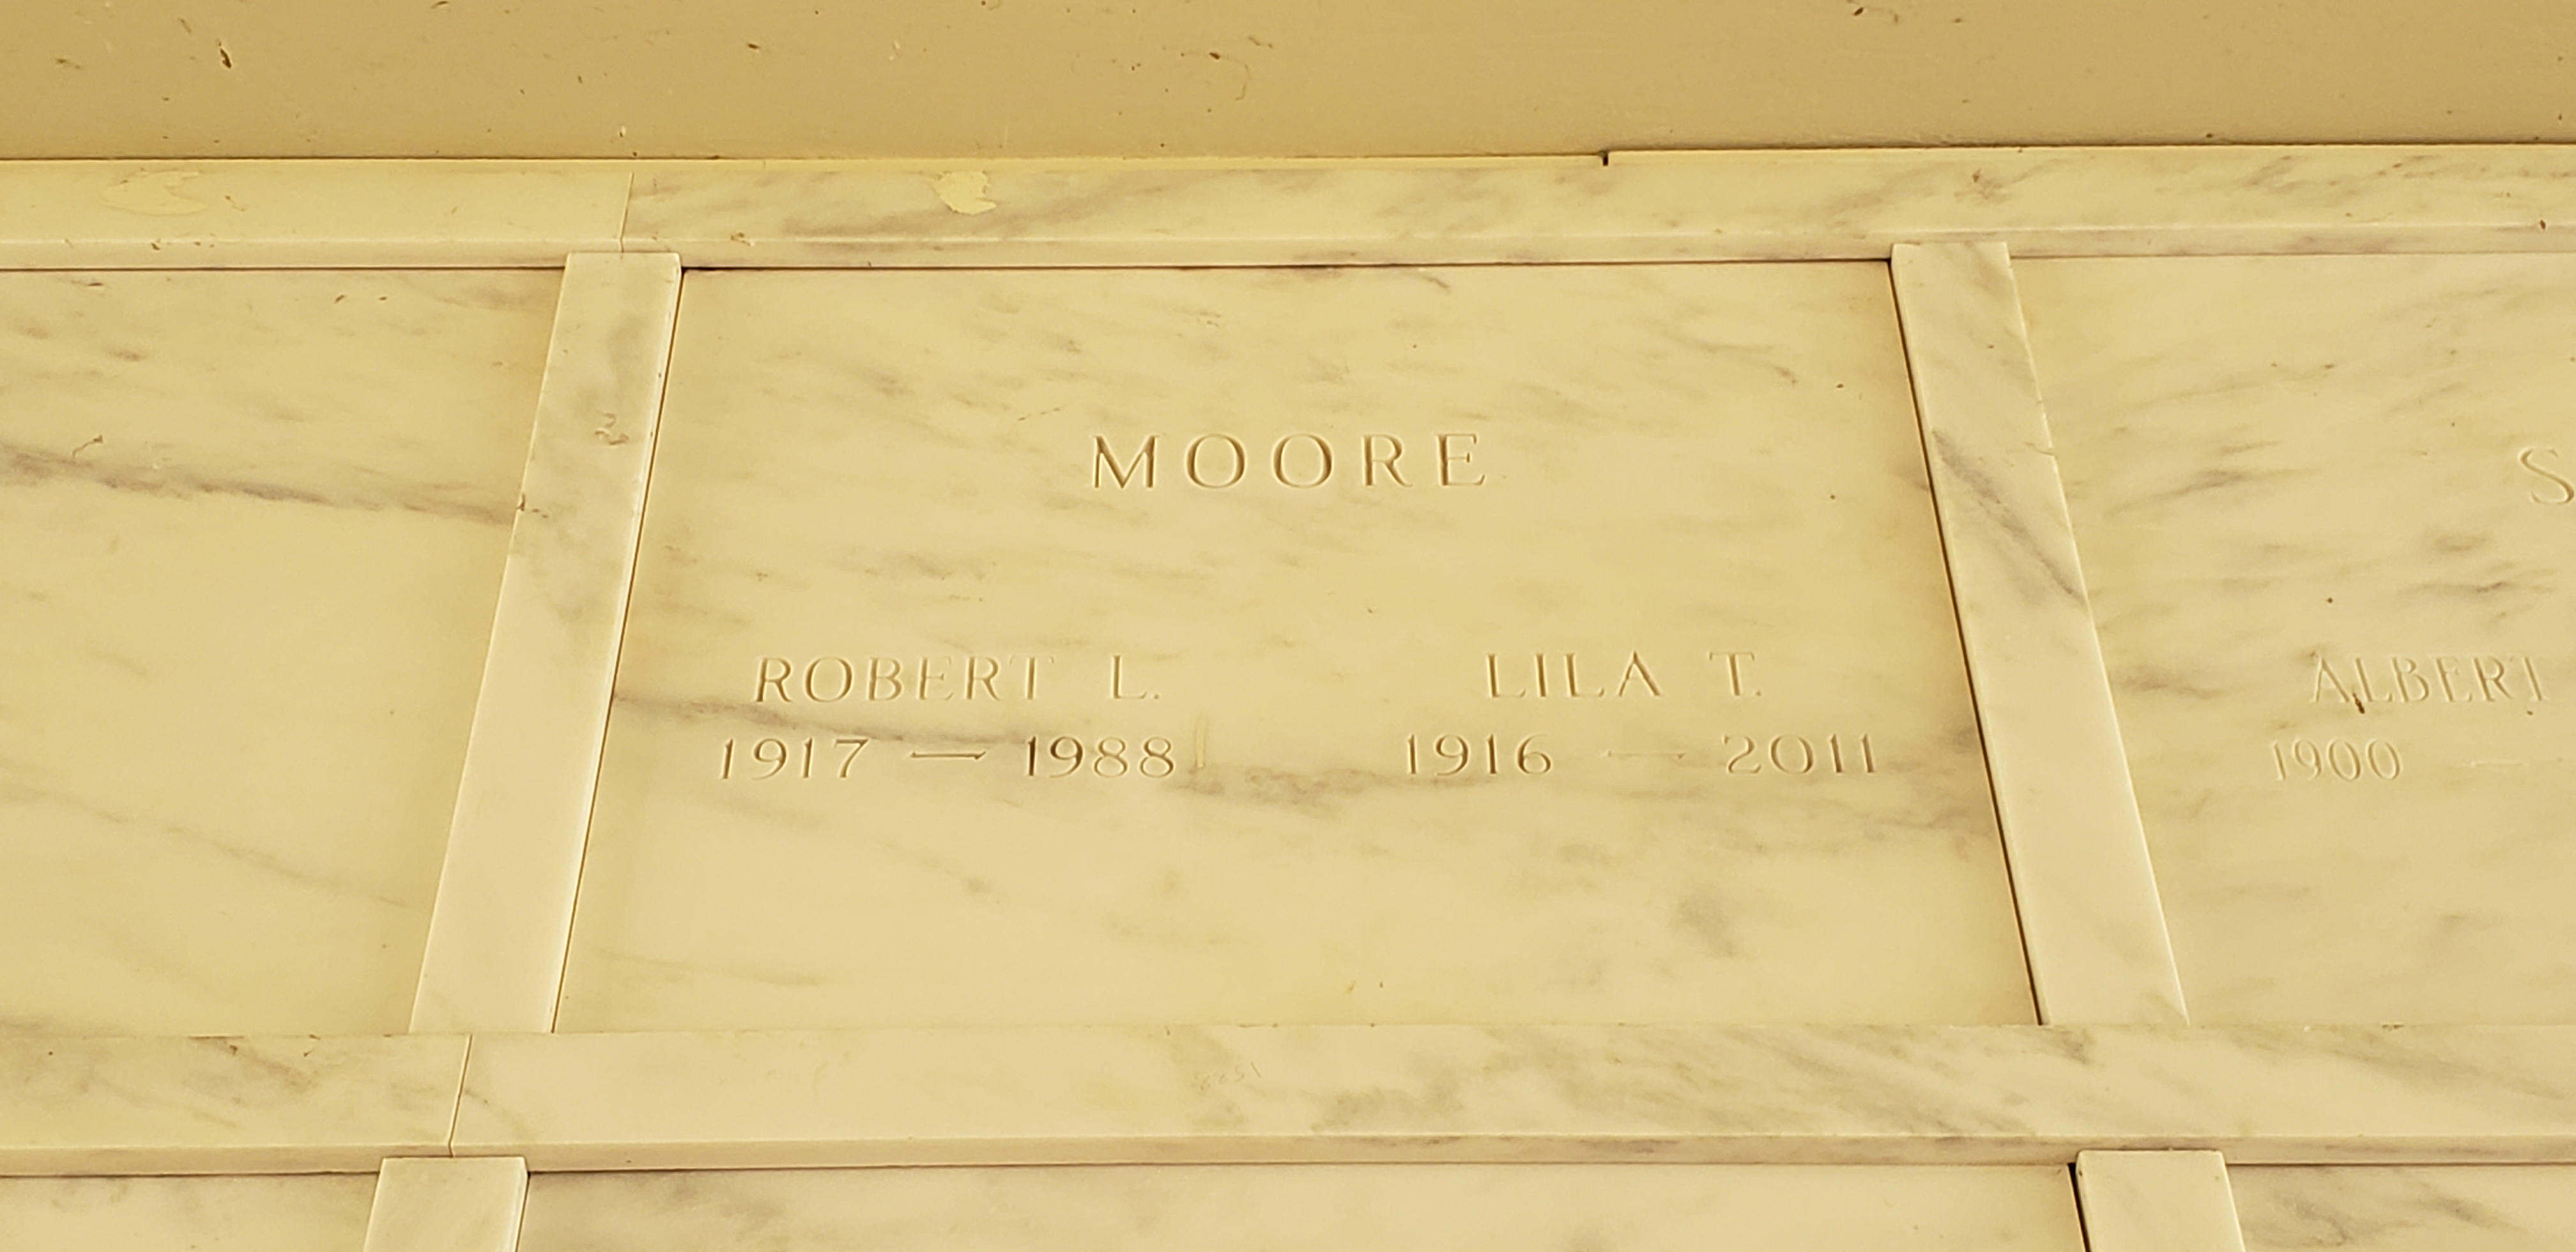 Robert L Moore